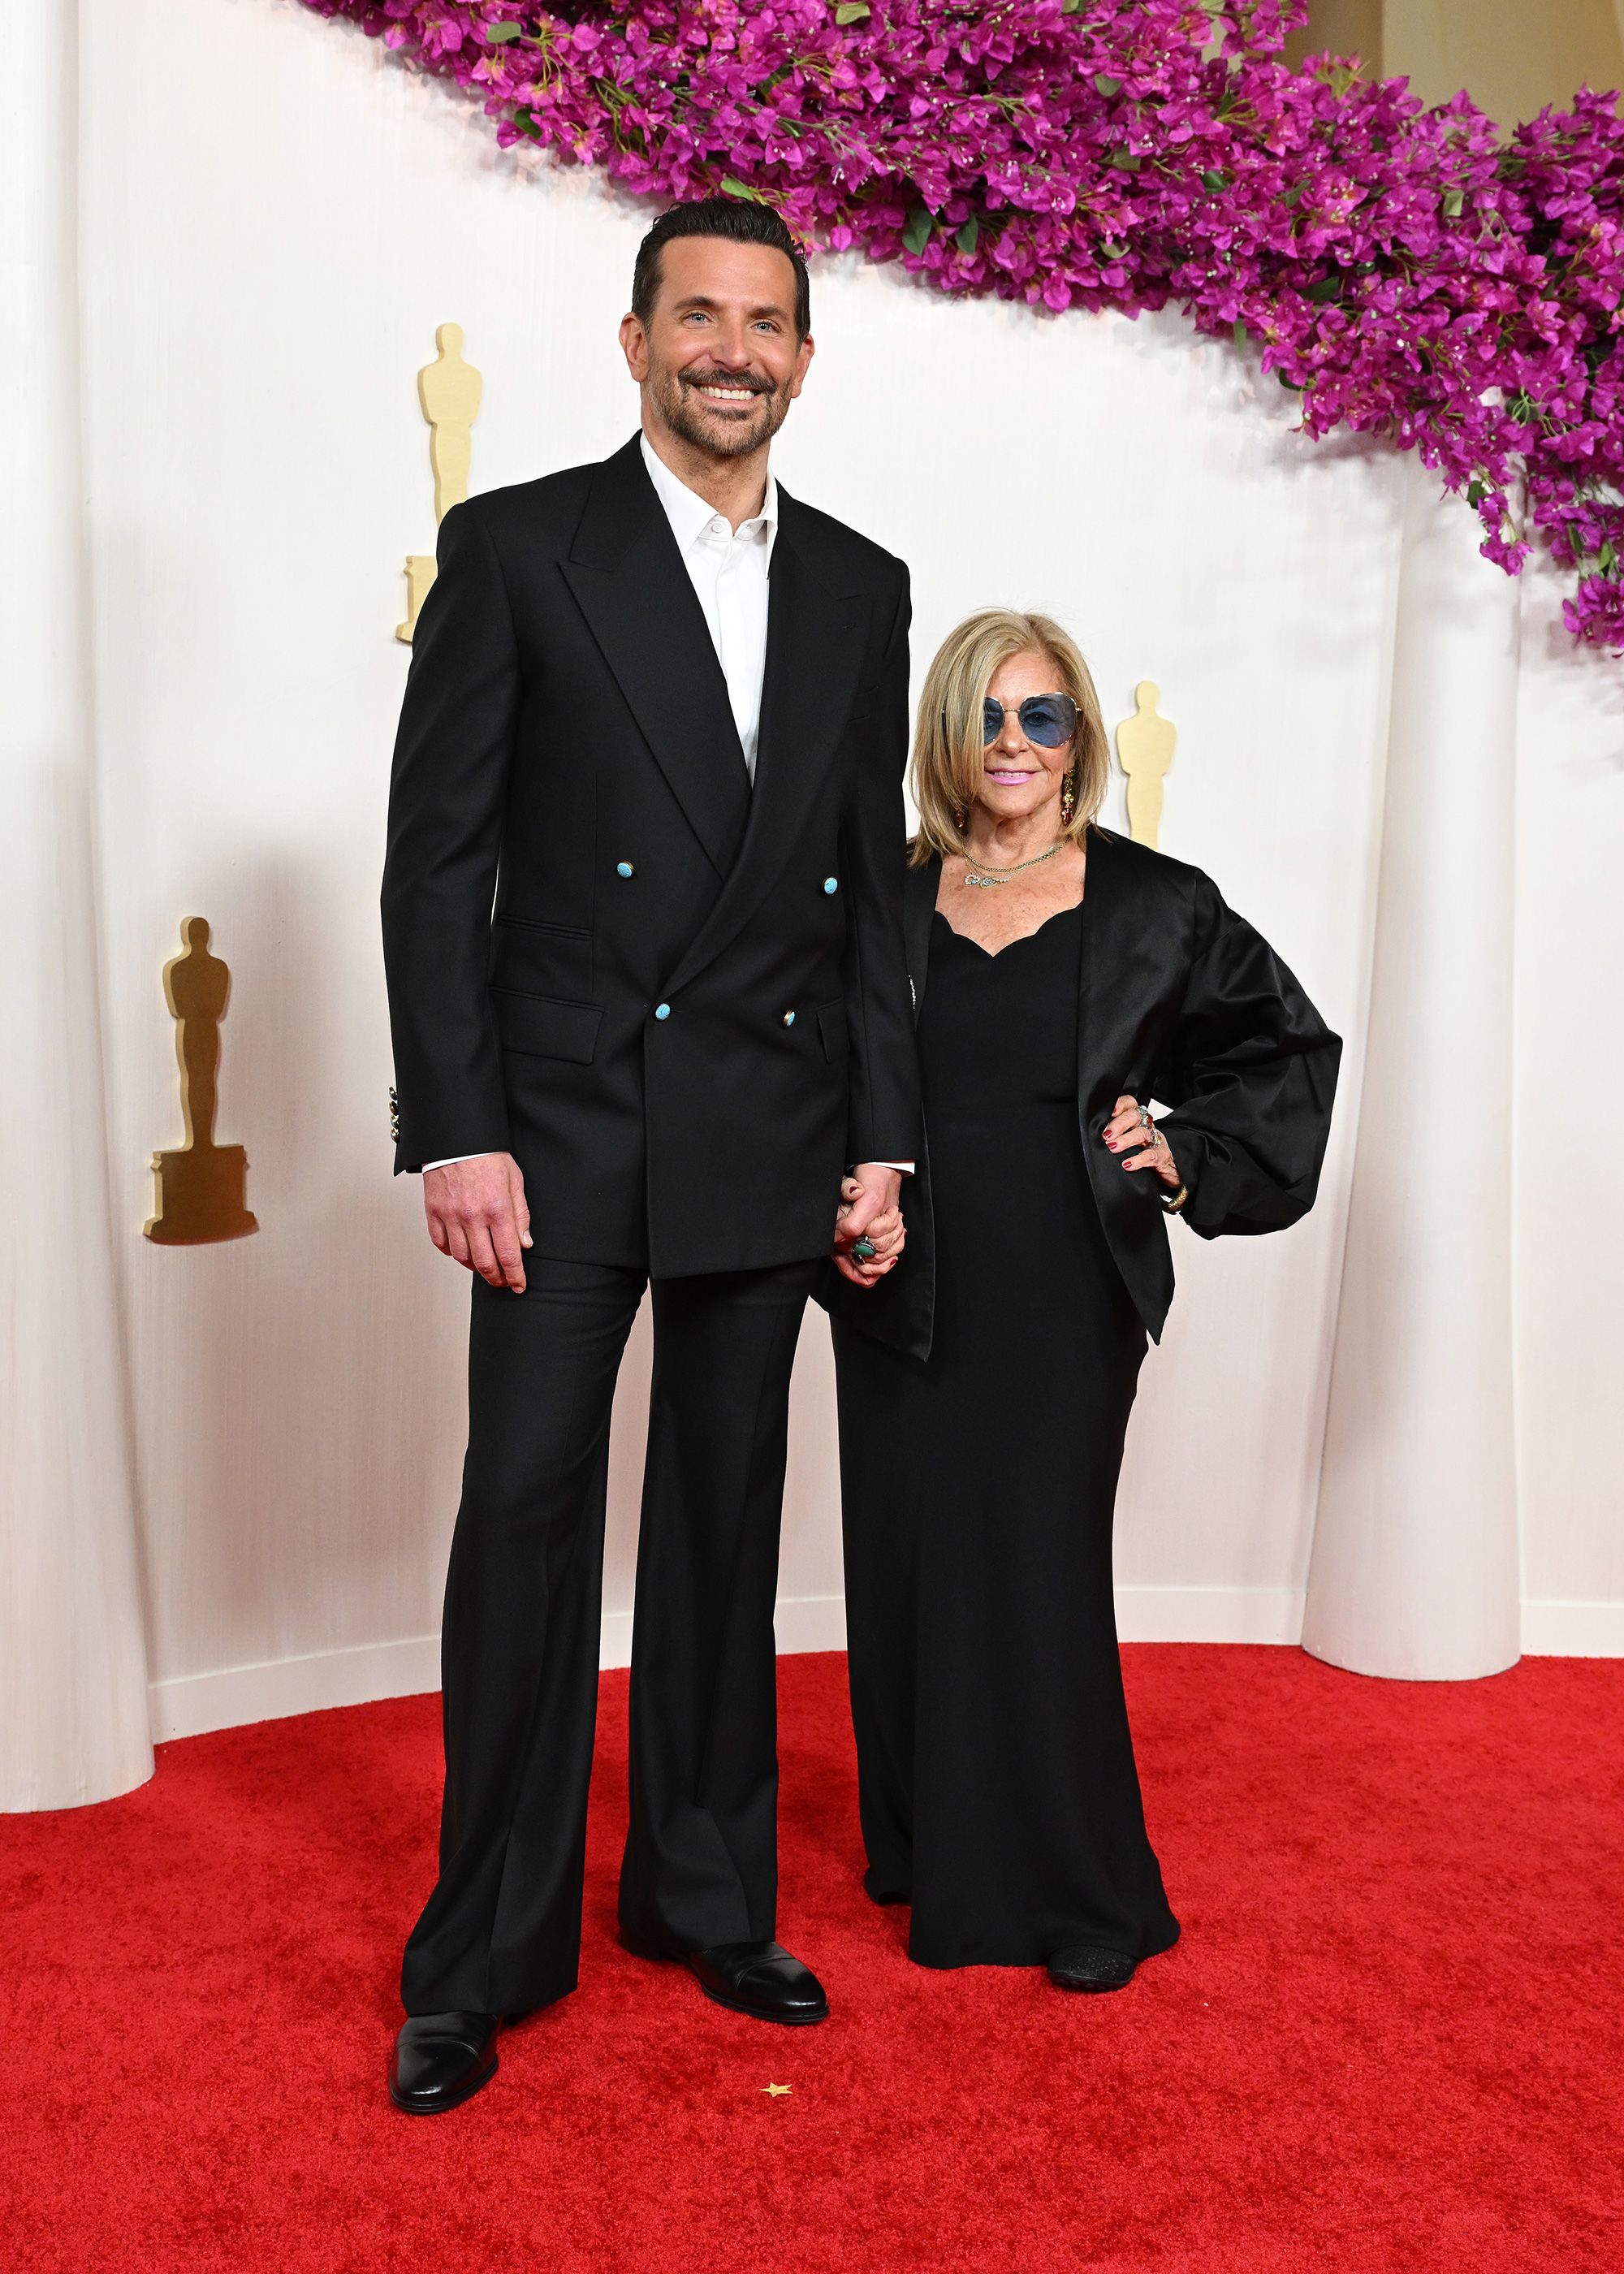 حافظ برادلي كوبر، المرشح لجائزة أفضل ممثل، على مظهره الأنيق مع بدلة Louis Vuitton المخصصة وساعة Tambour.  وكان كوبر برفقة والدته جلوريا كامبانو.